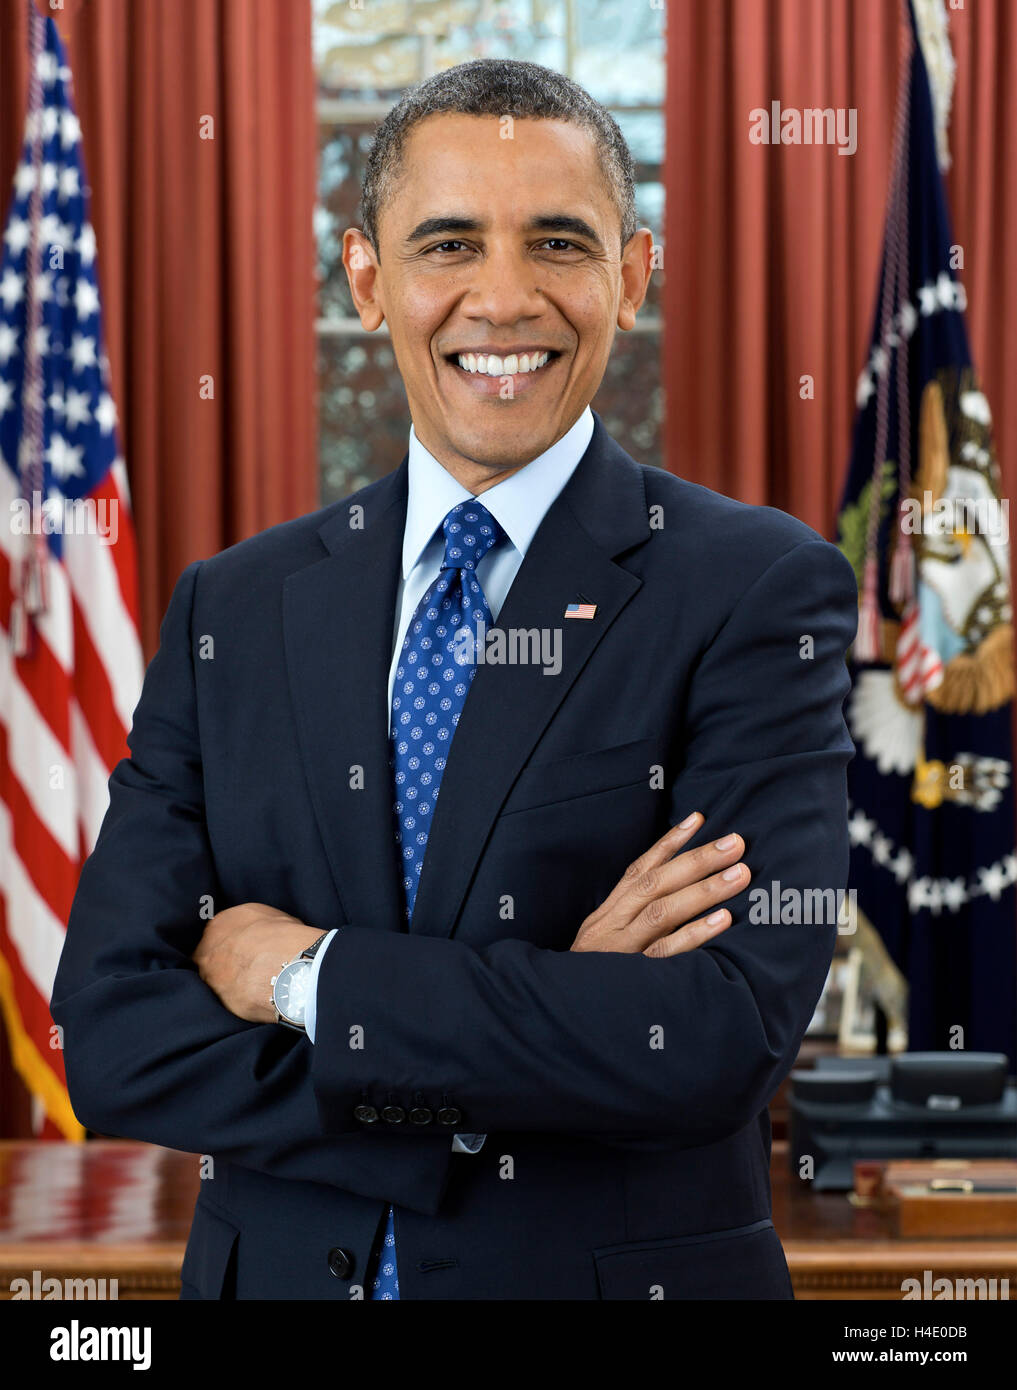 Barack Obama. Portrait officiel de la Maison Blanche de Barack Obama, le 44e président des États-Unis, décembre 2012 Banque D'Images